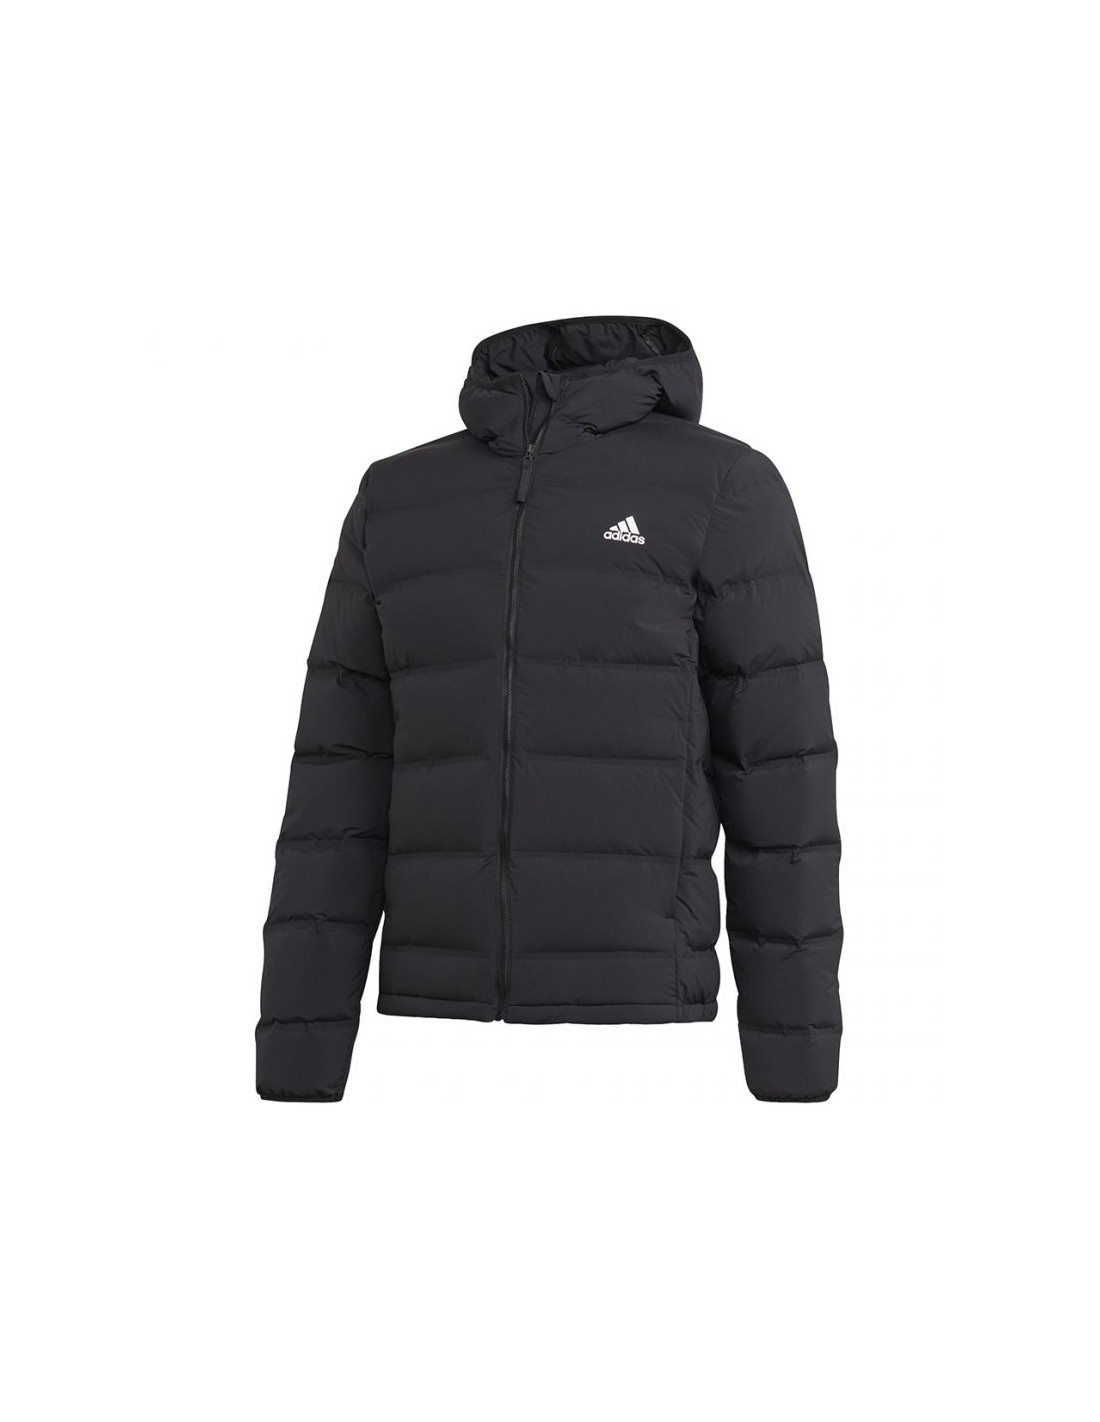 Adidas Helionic SHJM FT2521 jacket